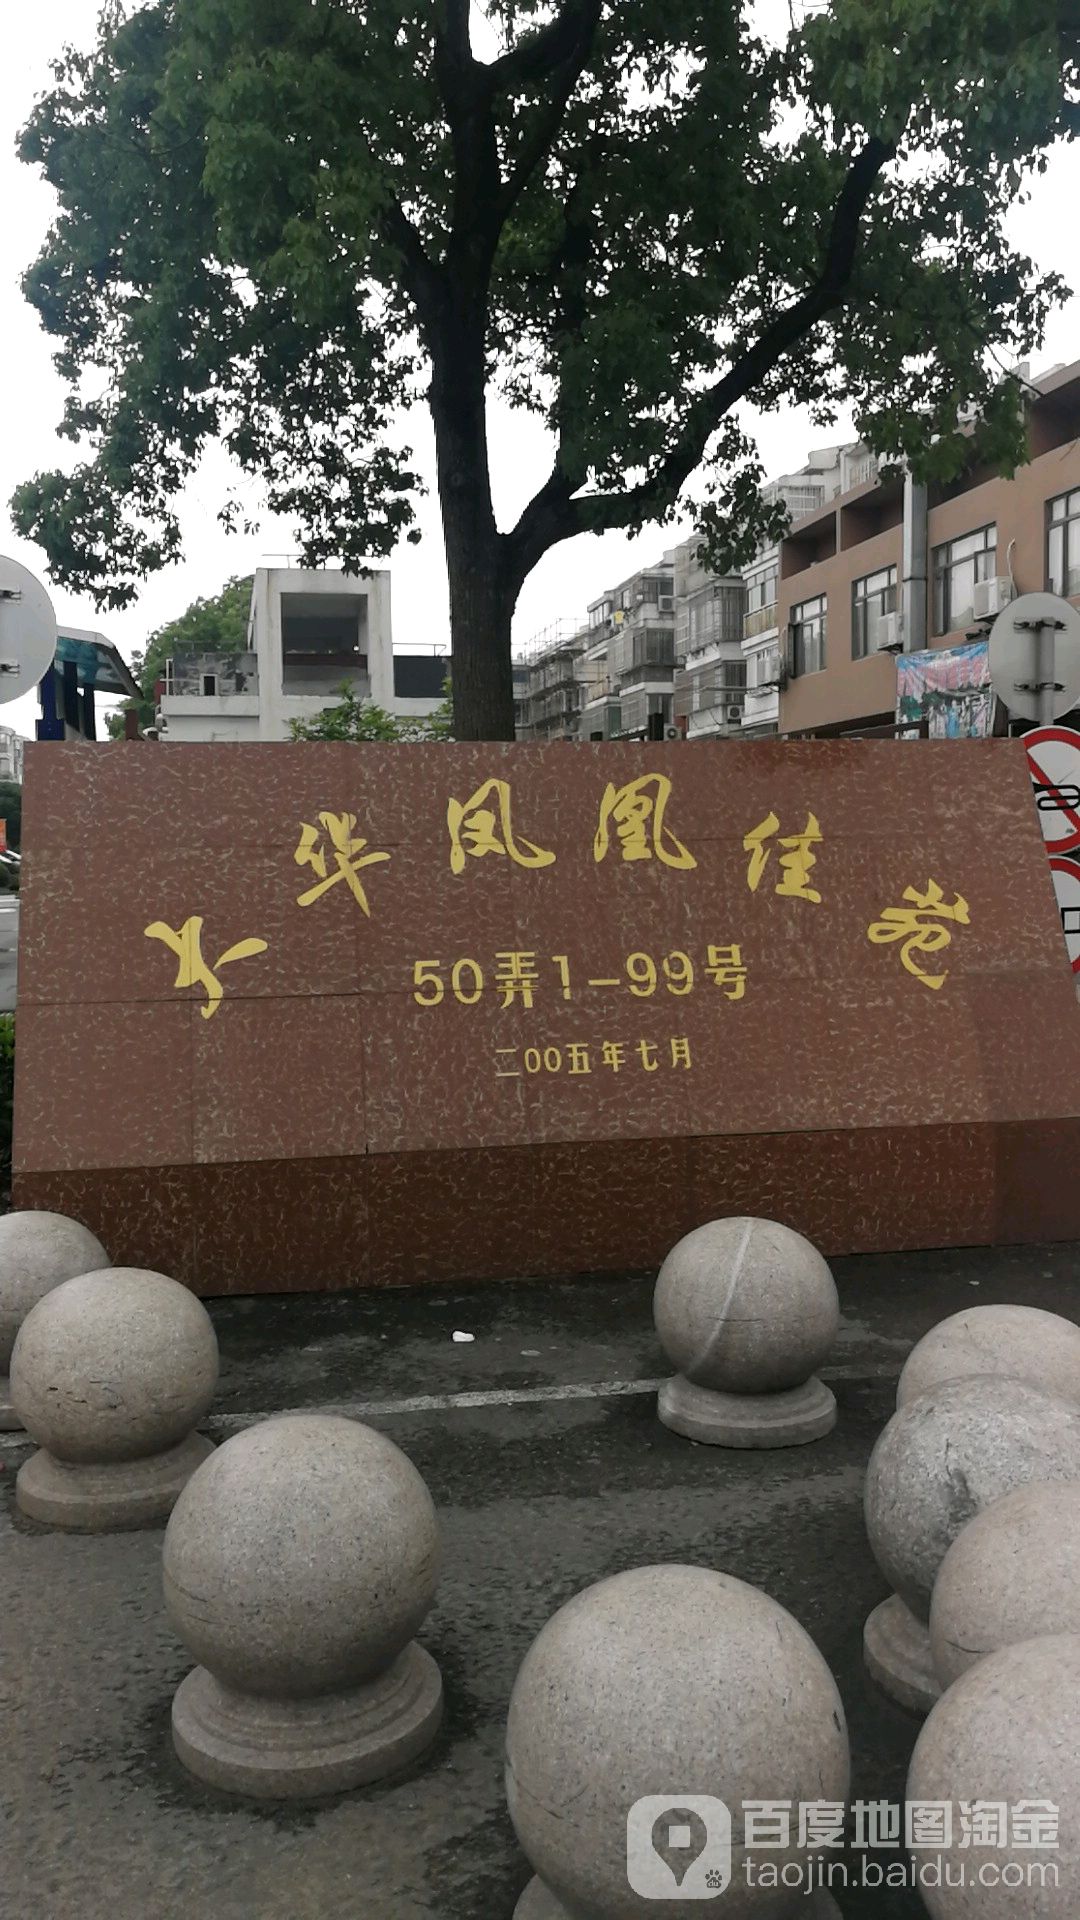 上海市崇明区丰康路与长橘路交叉路口往南约200米